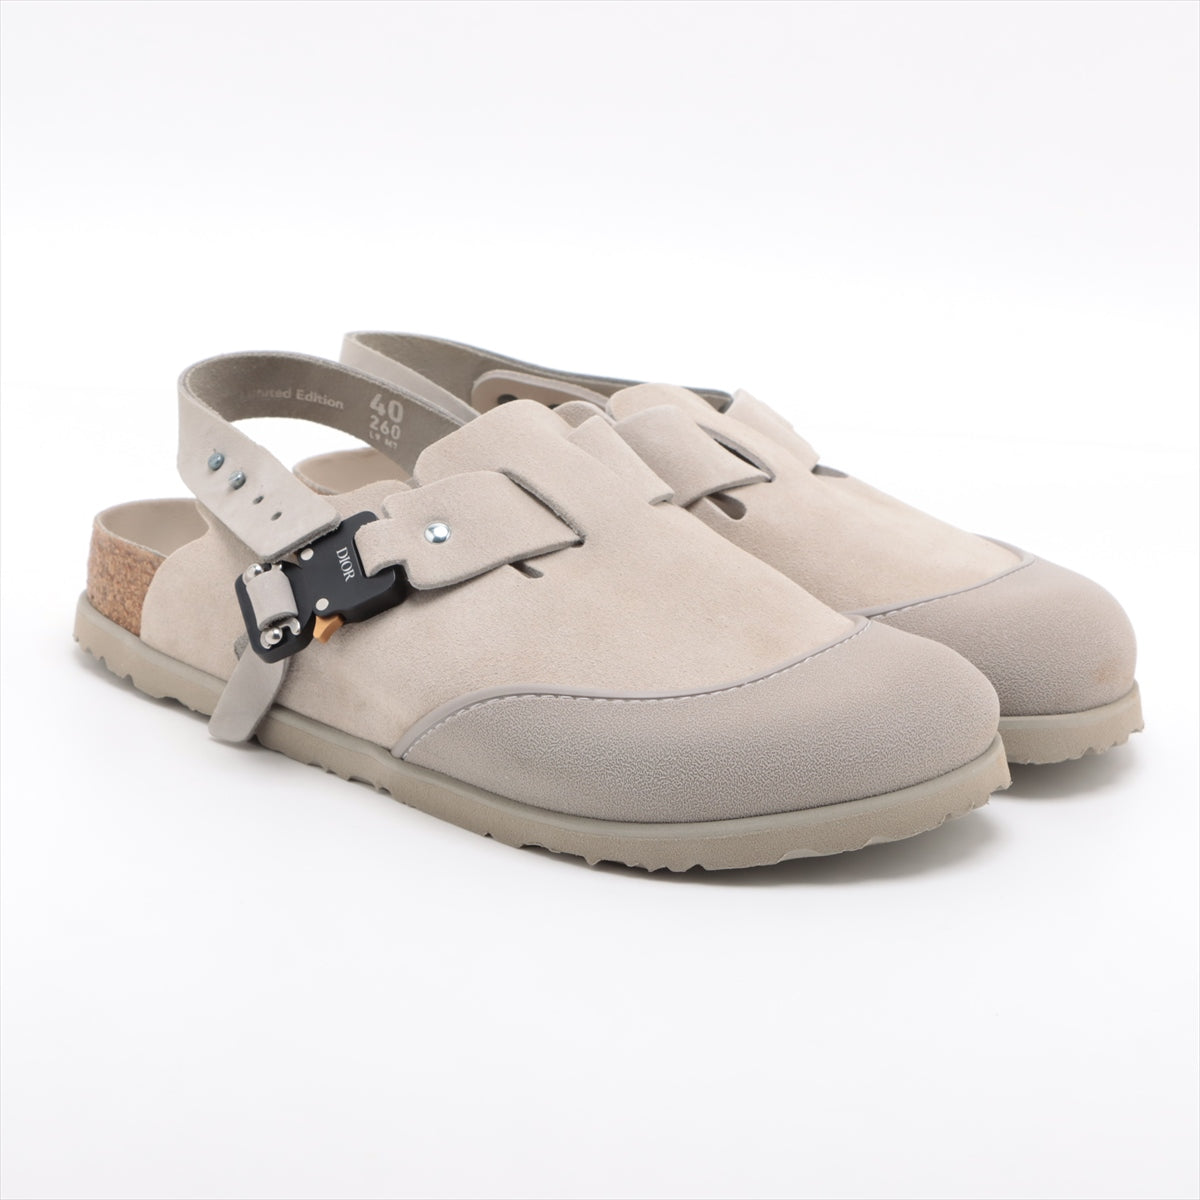 Dior x Birkenstock Suede Sandals 40 Men's Beige Tokio Buckle